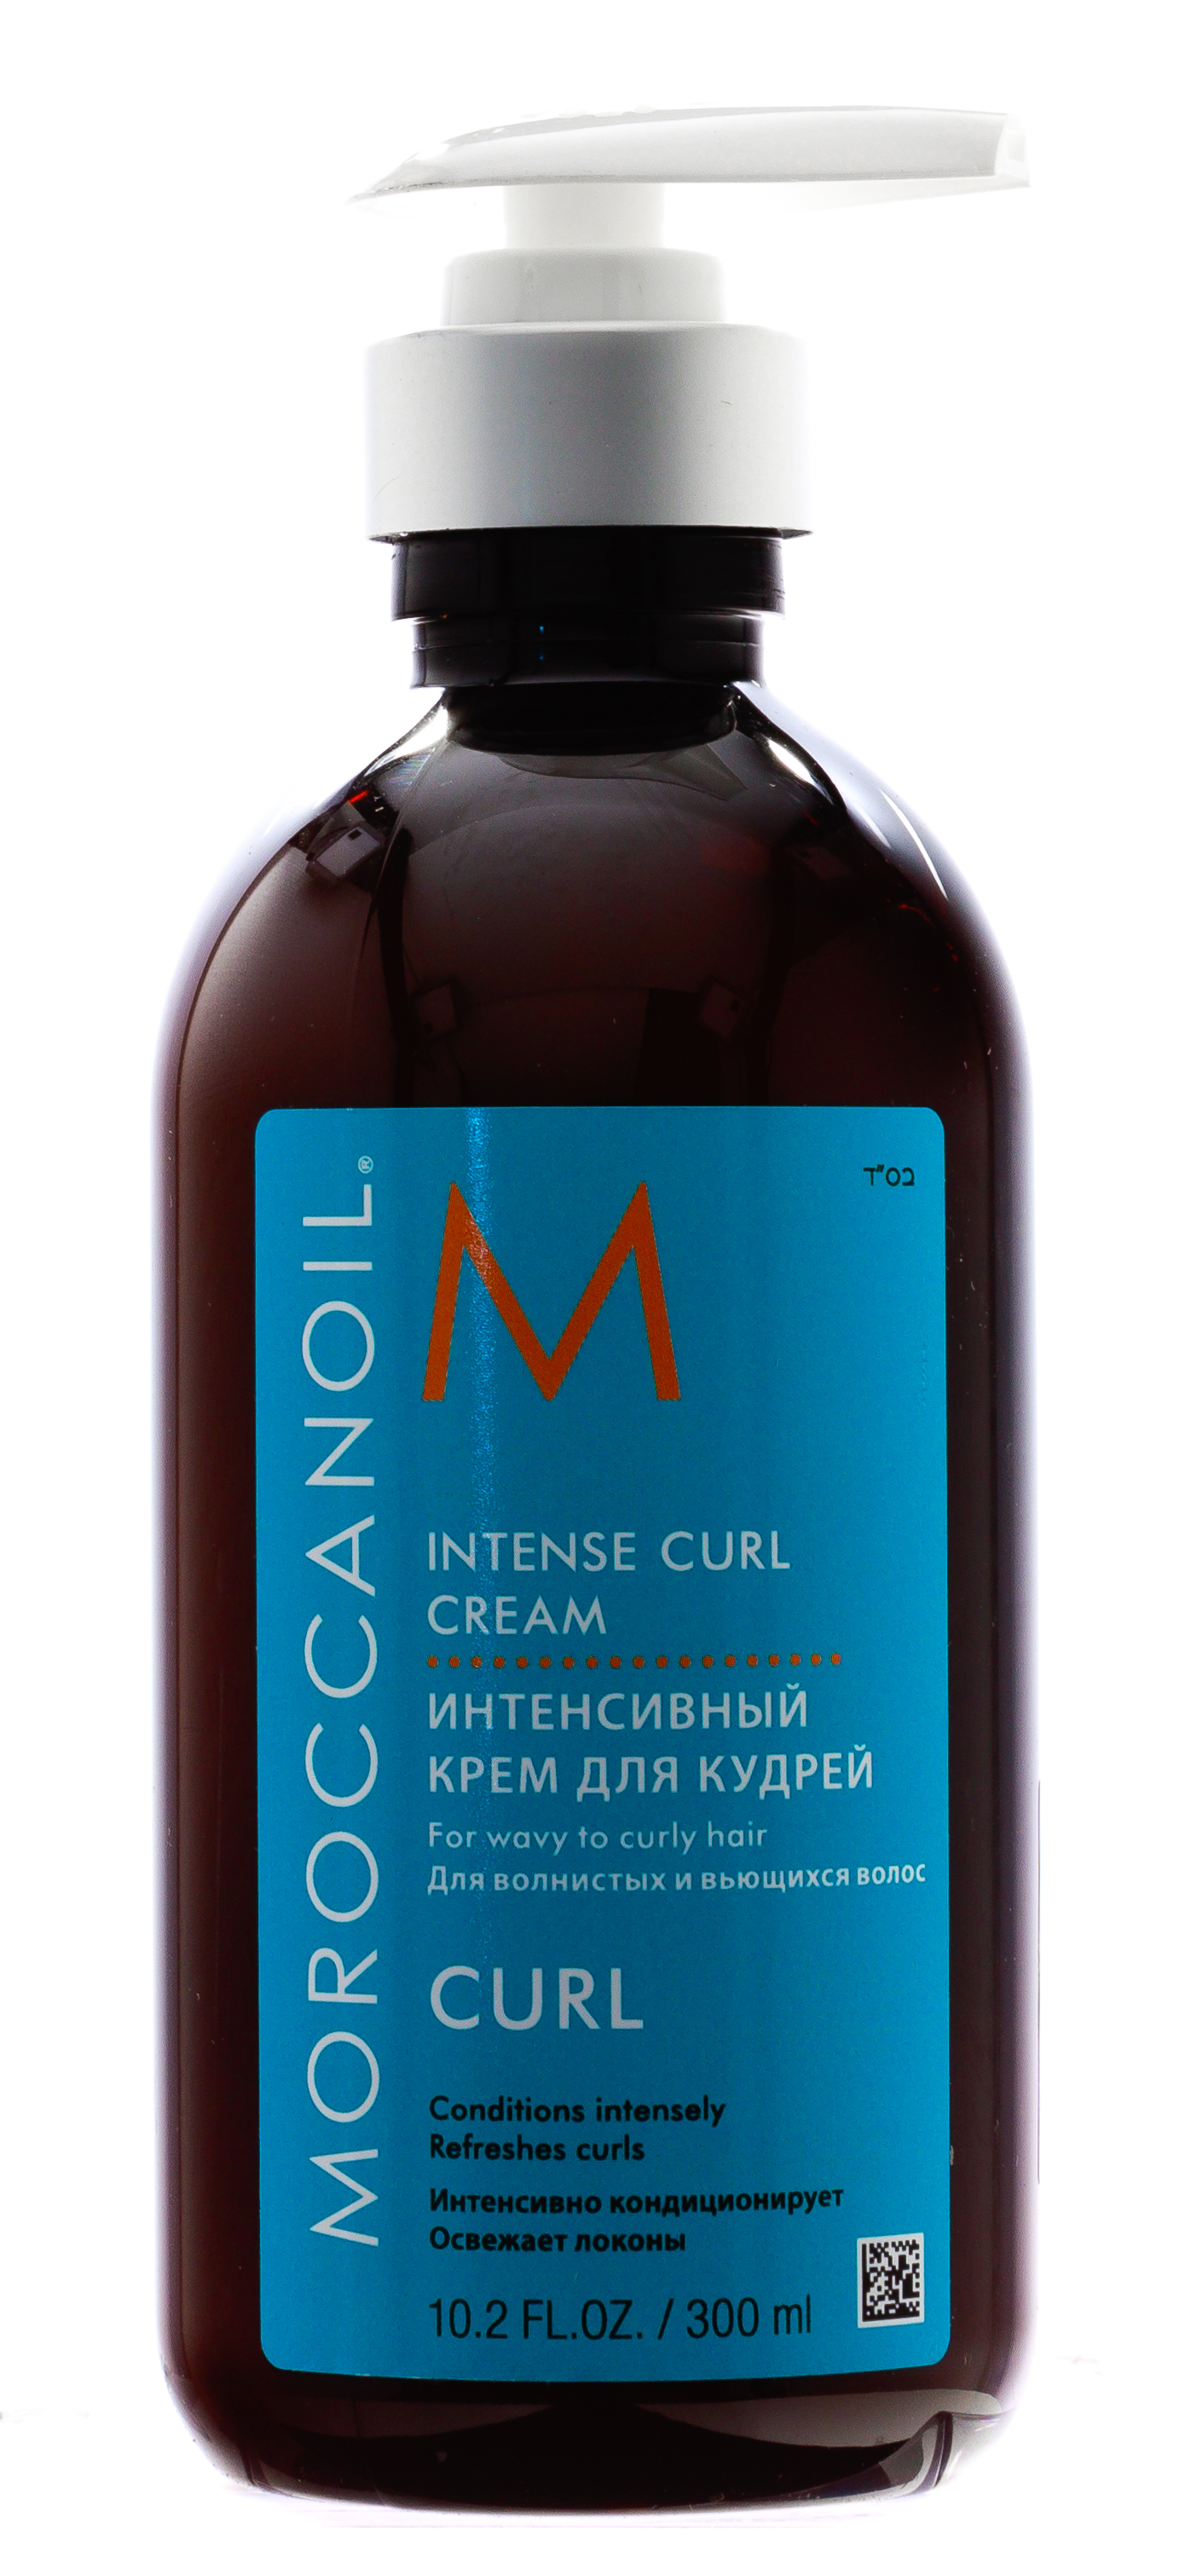 Moroccanoil Крем для подчеркивания кудрей, 300 мл (Moroccanoil, Curl) moroccanoil крем intense curl 500 мл 500 г